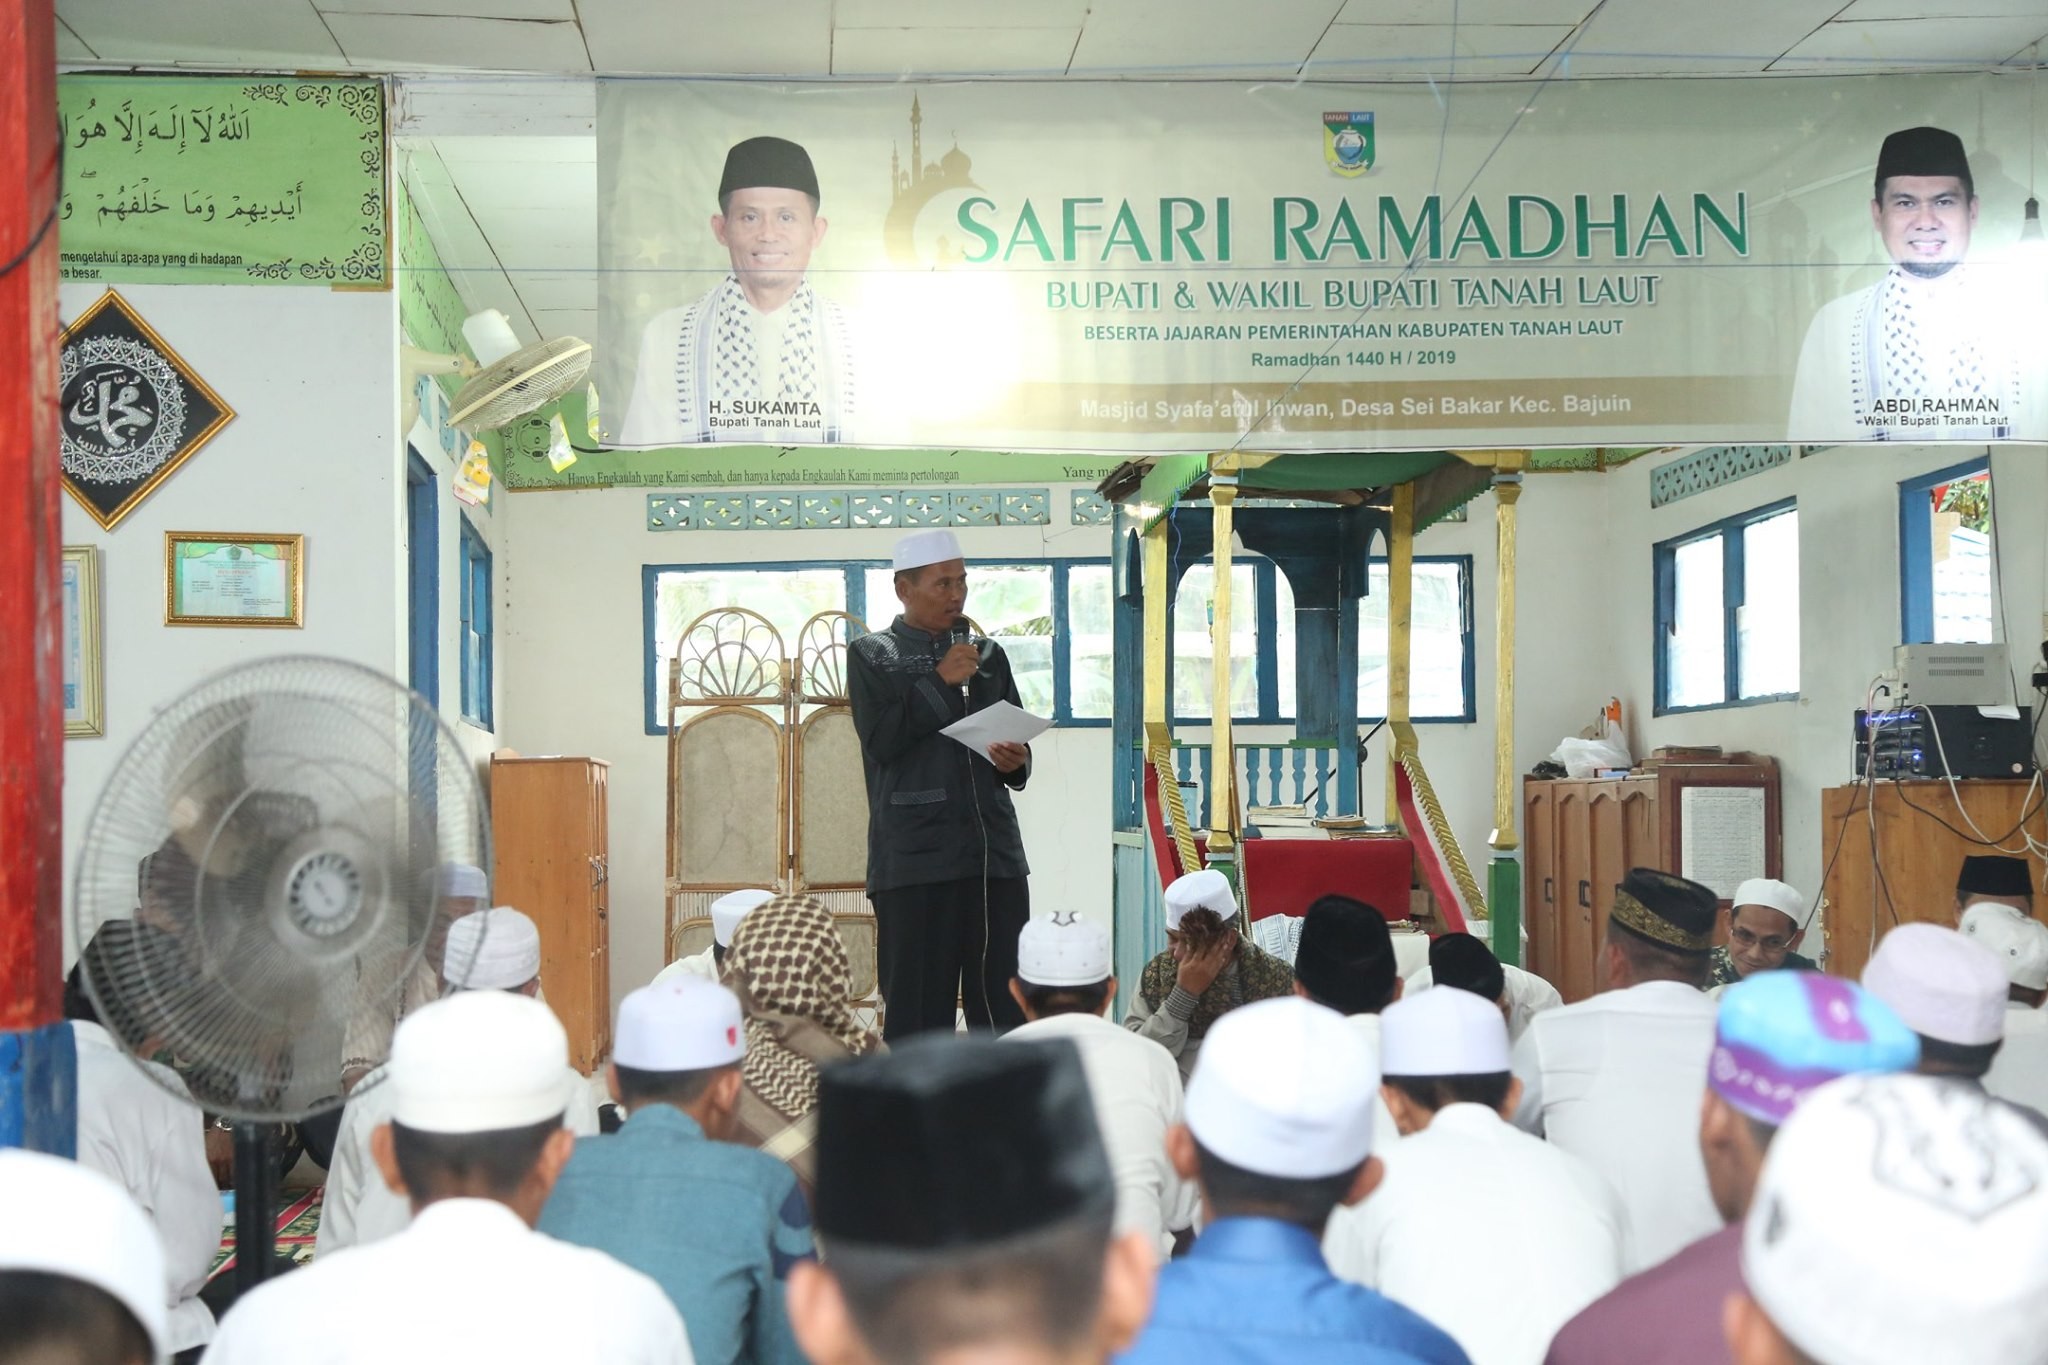 Safari Ramadhan Bupati dan Wakil Bupati Tanah Laut (Tala) di Mesjid Syafa\'atul Ikhwan Desa Sungai B